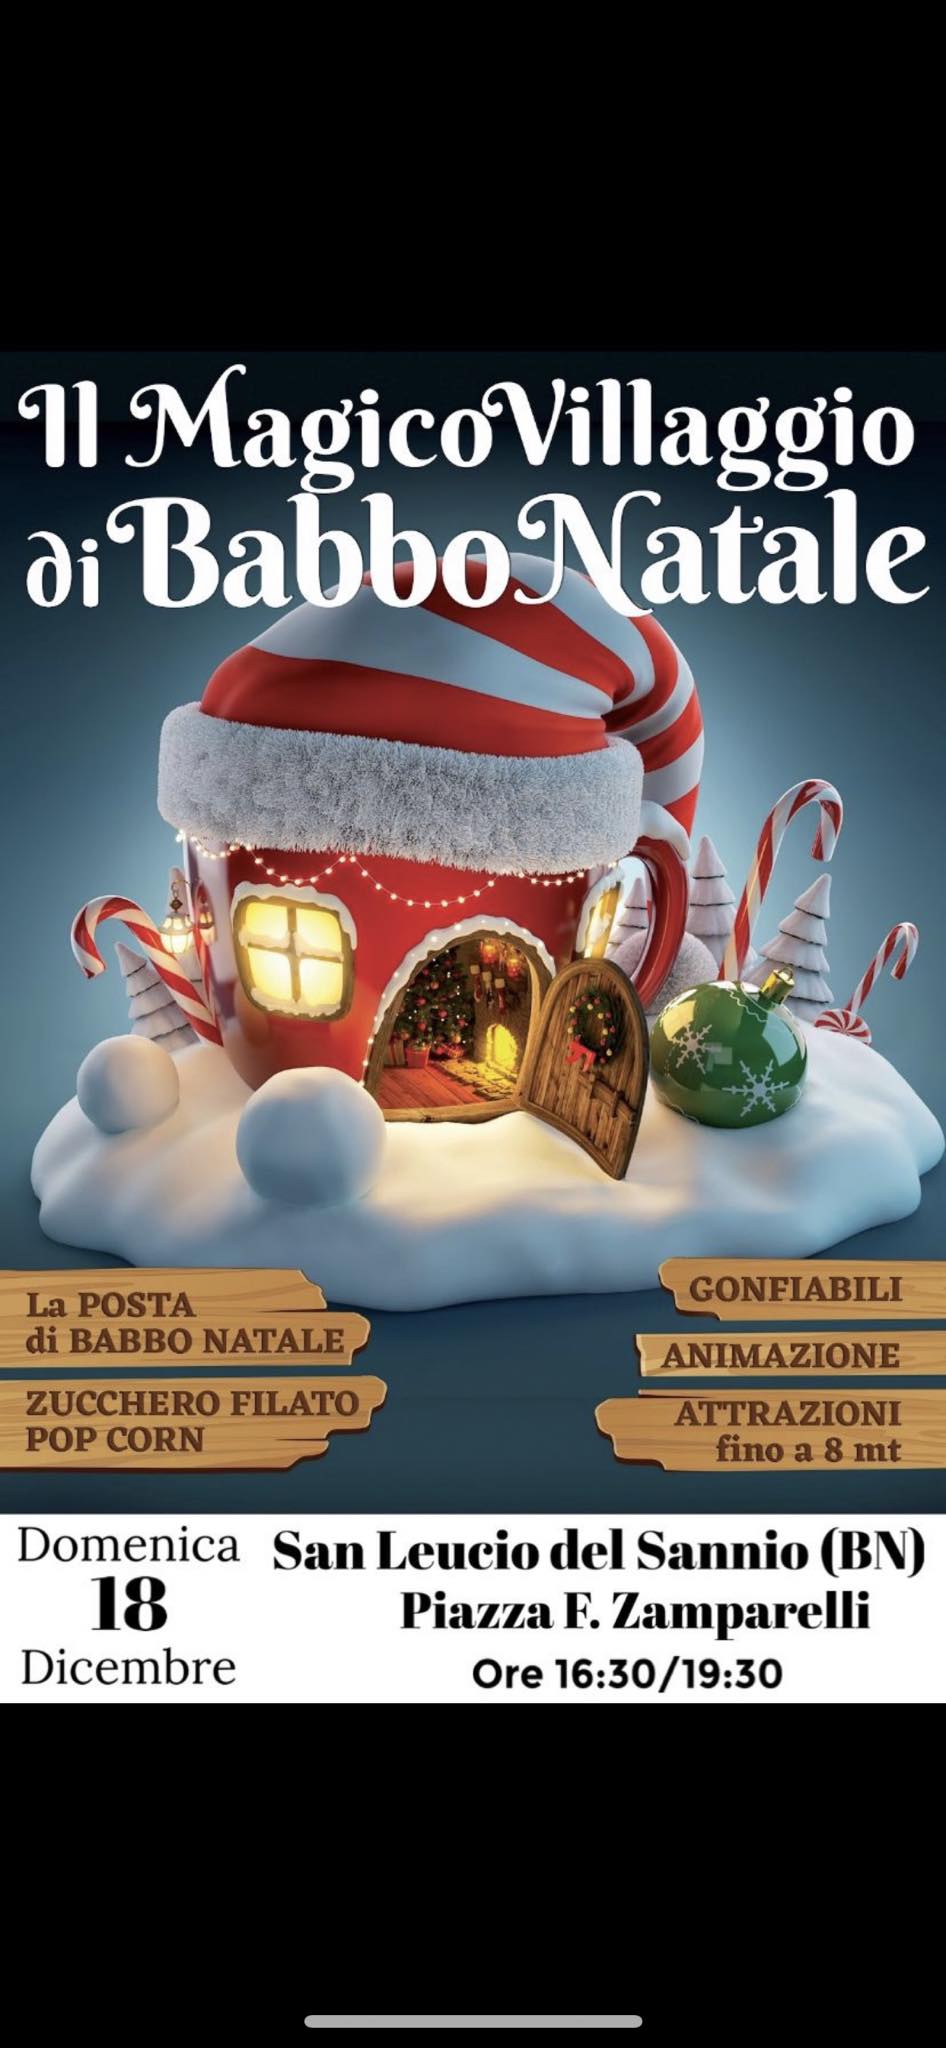 San Leucio del Sannio, domenica 18 dicembre tutti al “Magico Villaggio di Babbo Natale”